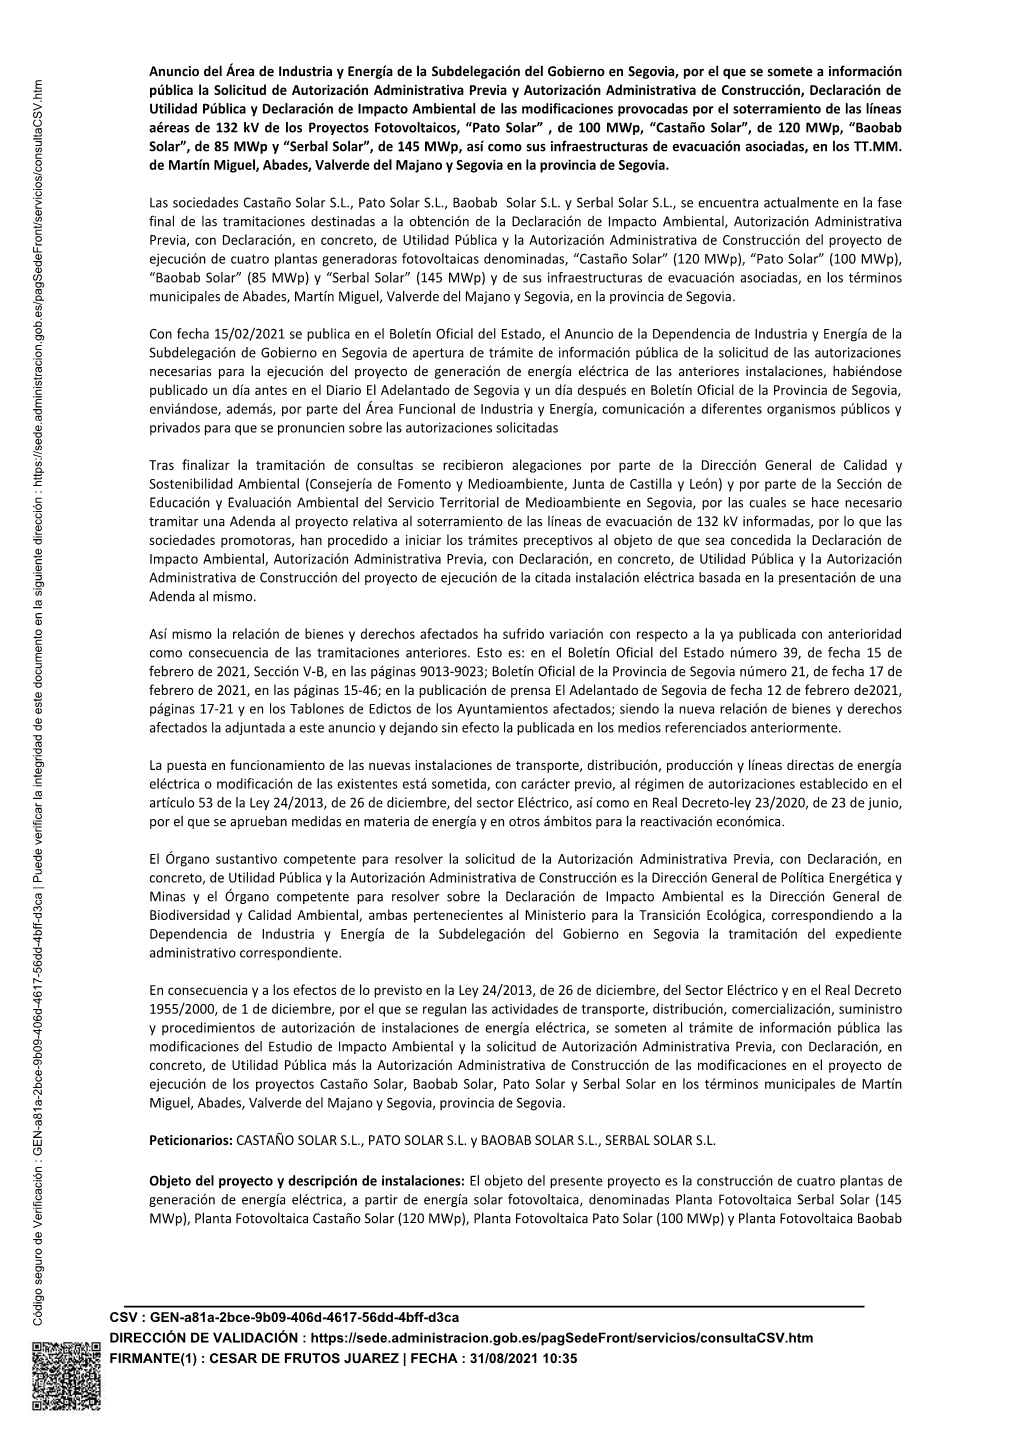 Anuncio Del Área De Industria Y Energía De La Subdelegación Del Gobierno En Segovia, Por El Que Se Somete a Información